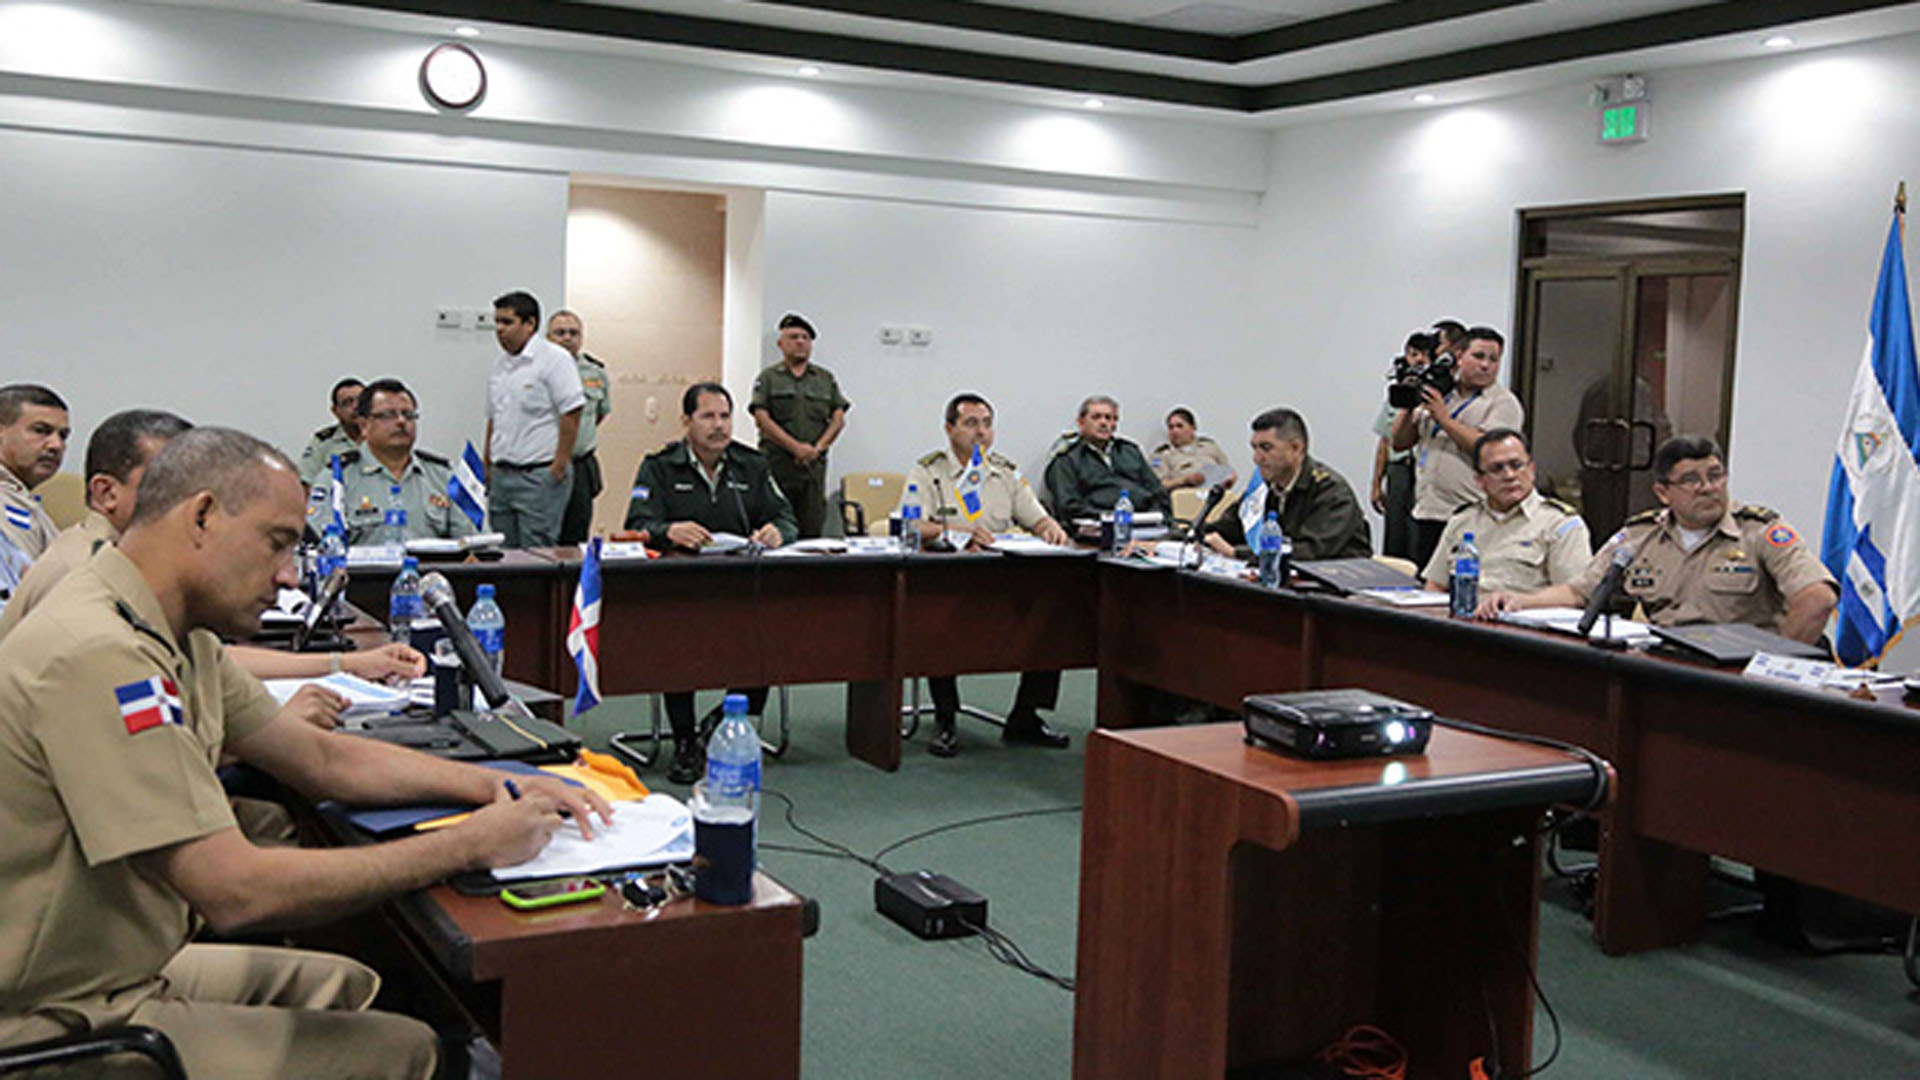 Nicaragua sirvió como sede para albergar ﻿a Jefes de academias y entidades policiales para tratar el tema de la seguridad ciudadana